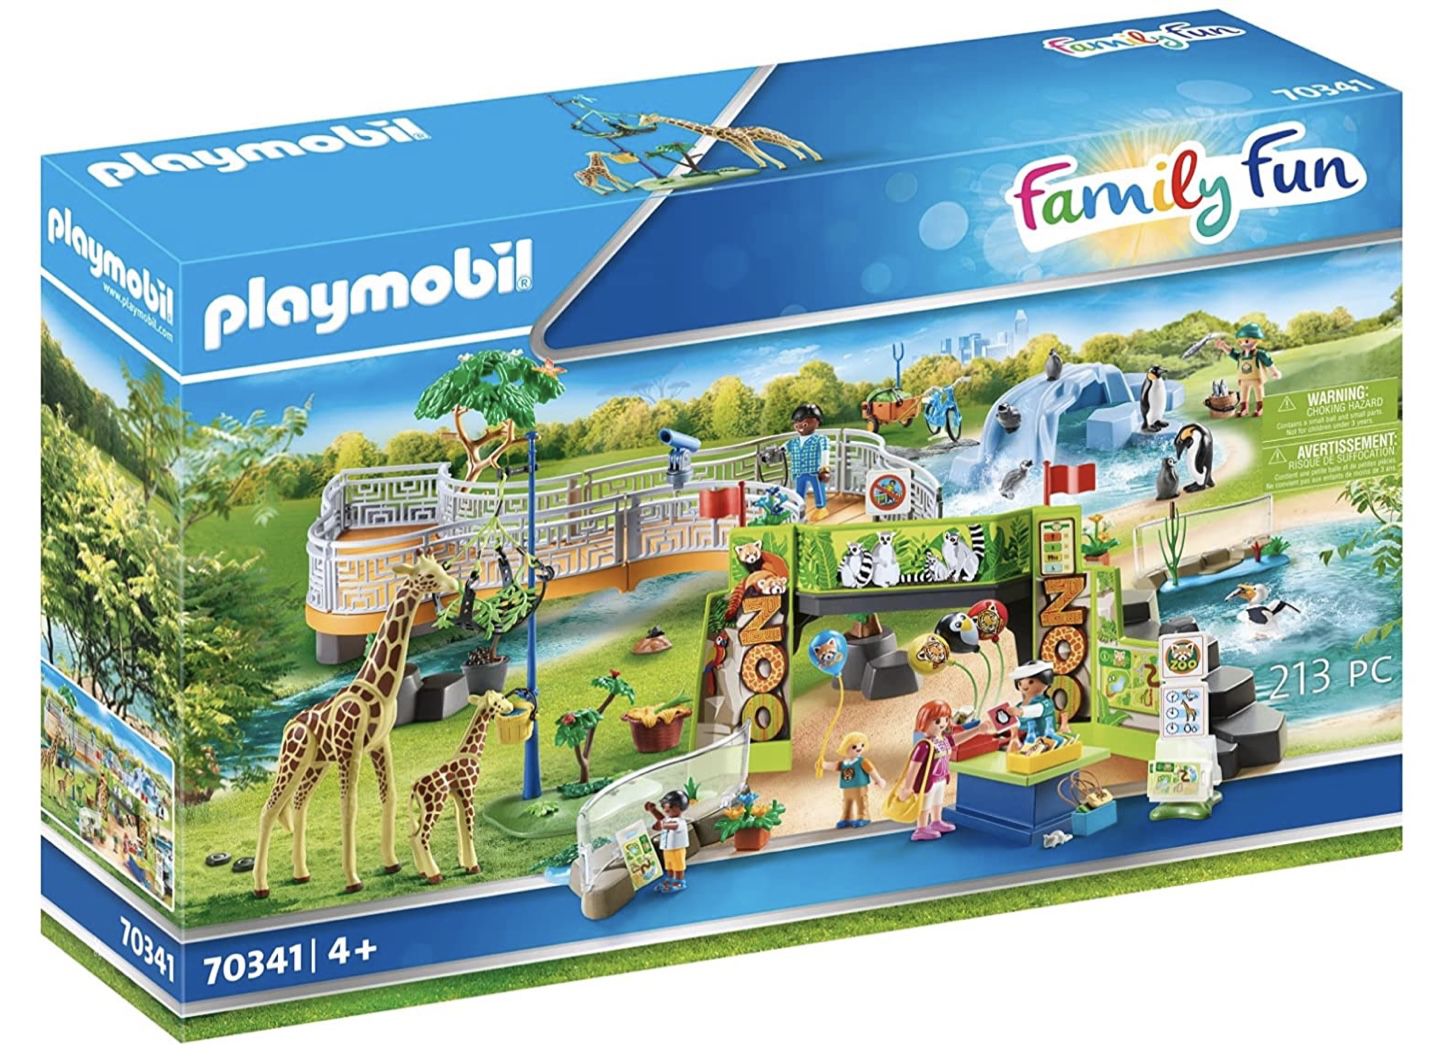 Playmobil Family Fun 70341   Mein großer Erlebnis Zoo für 31,41€ (statt 48€)